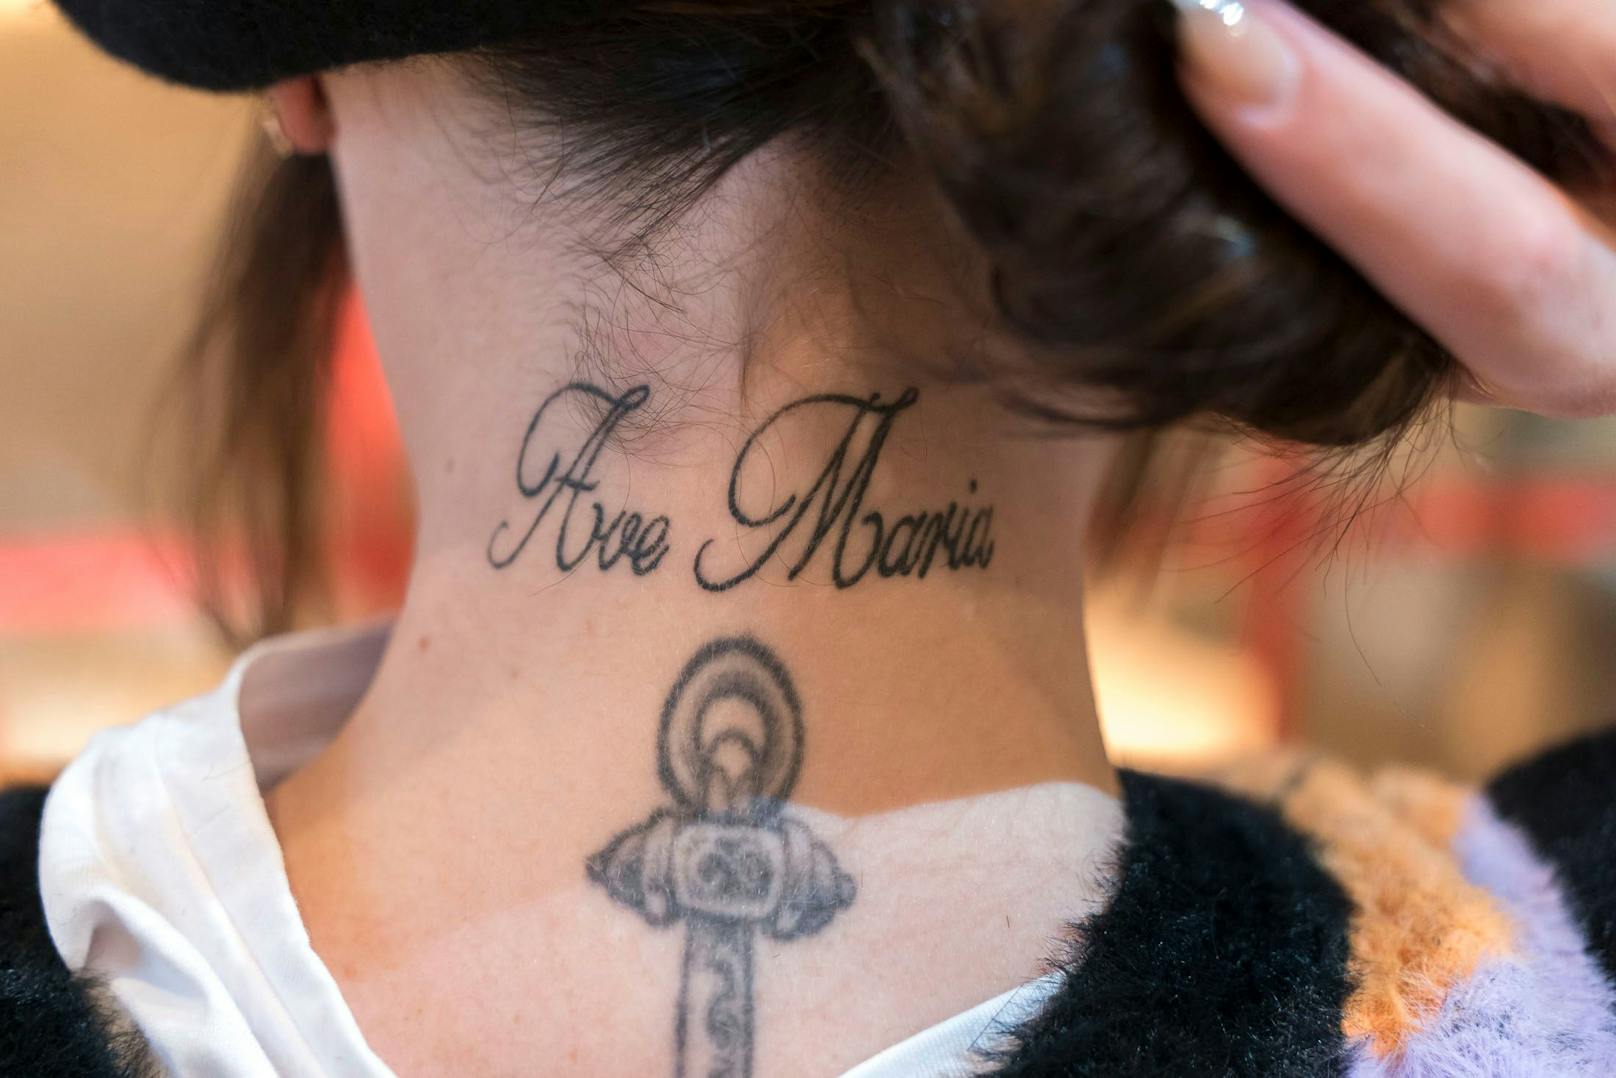 Ave Maria Tattoo.